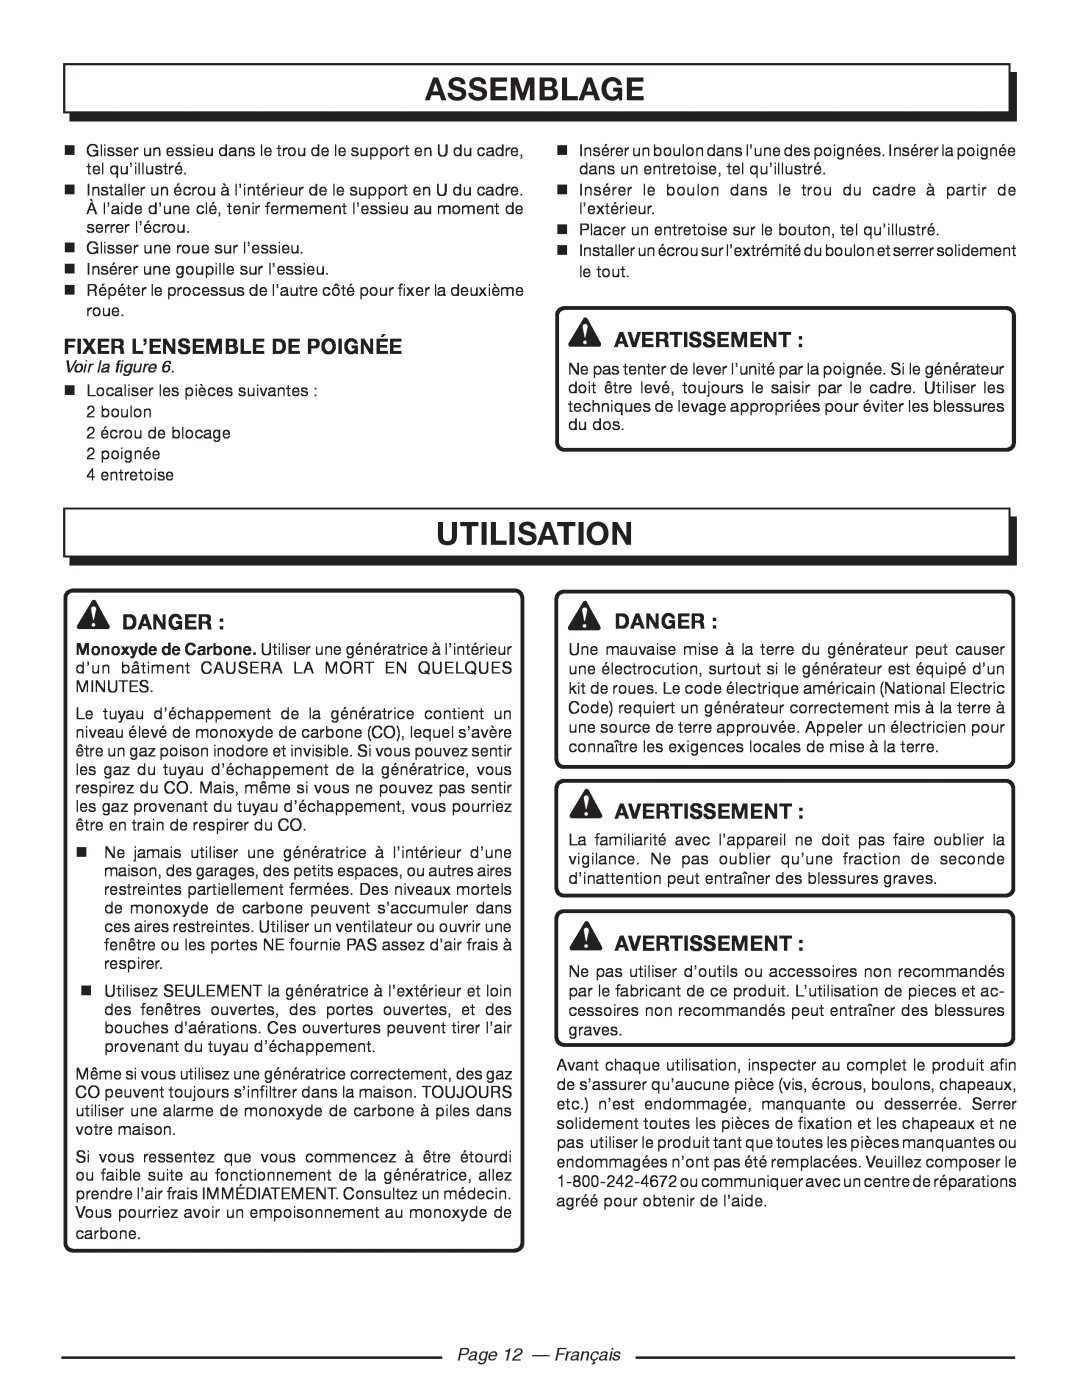 Homelite HGCA5000 Utilisation, Fixer L’Ensemble De Poignée, Danger Danger, Page 12 - Français, Assemblage, Avertissement 